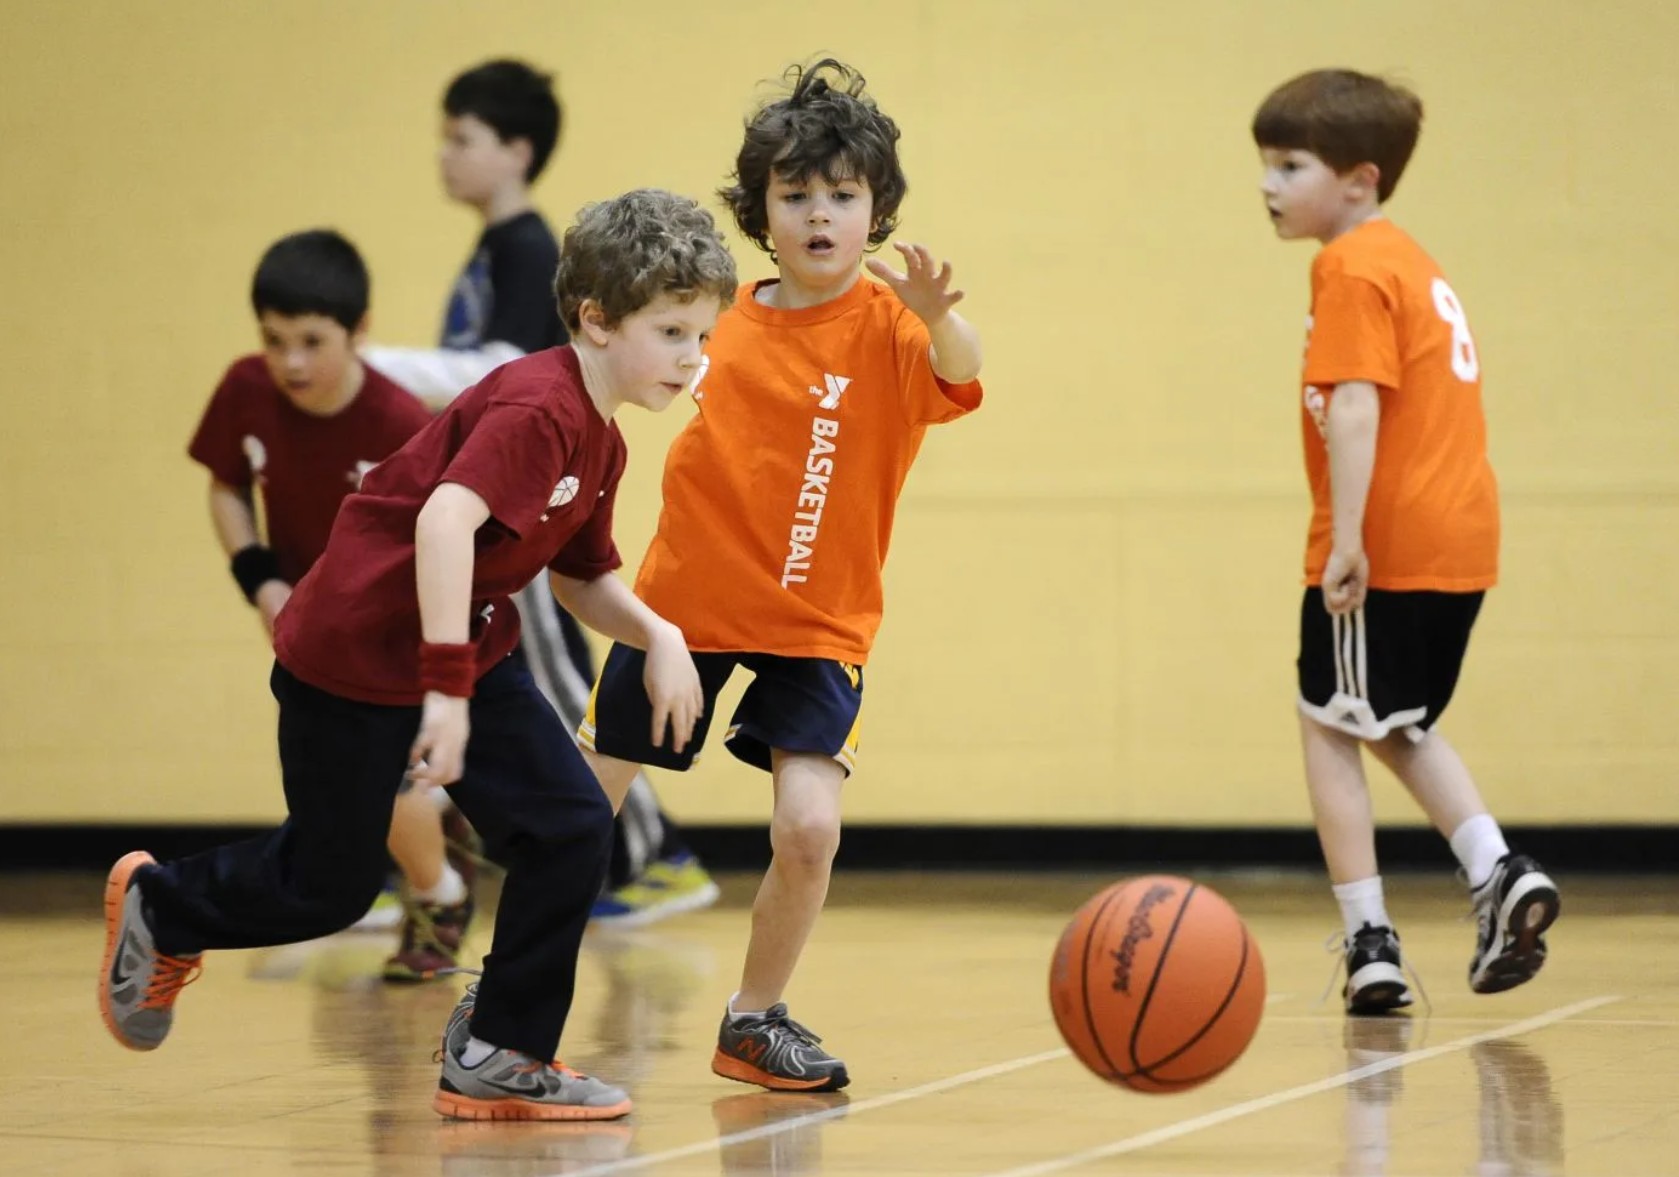 Детскую игру баскетбол. Баскетбол дети. Дети играющие в баскетбол. Спортивные игры для детей. Спорт дети.